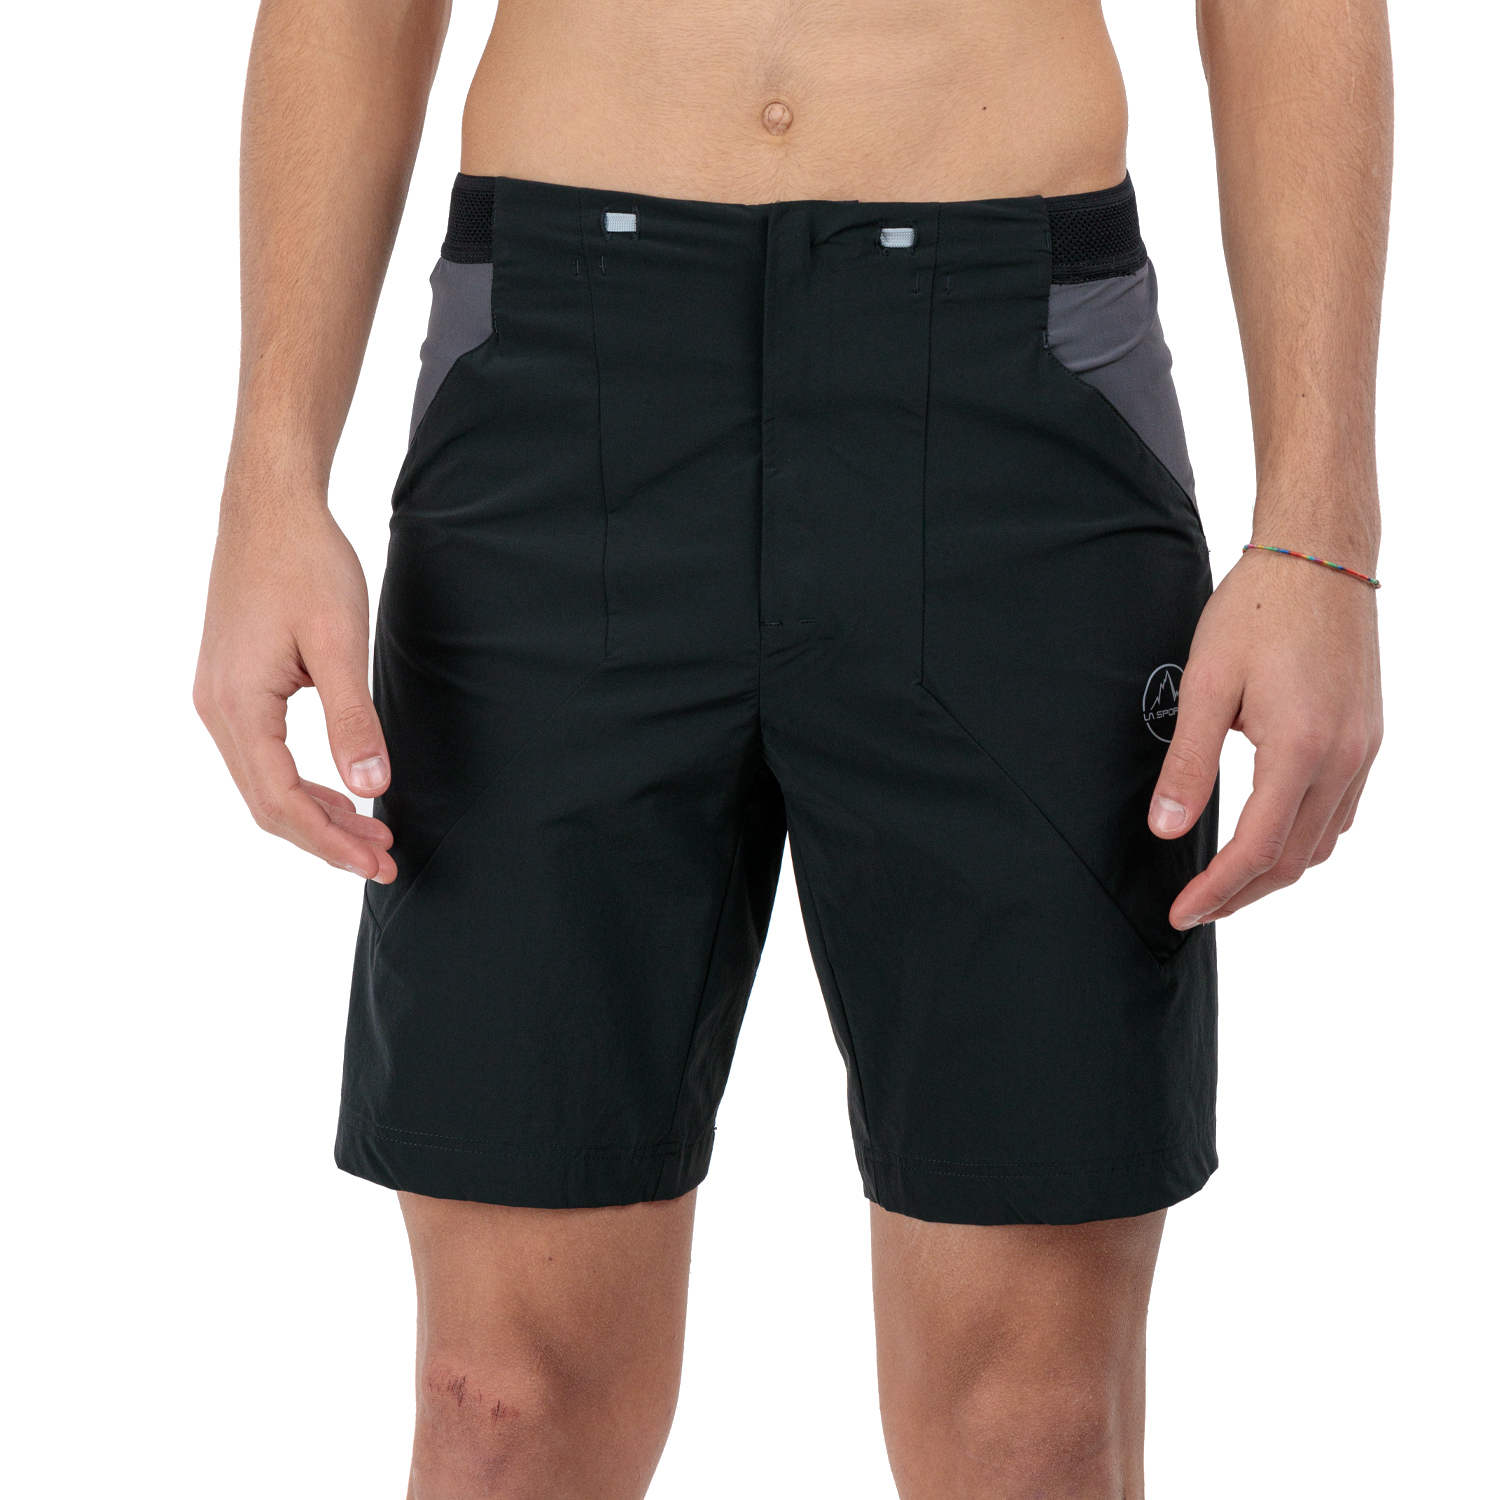 La Sportiva Guard 9in Pantaloncini - Black/Carbon